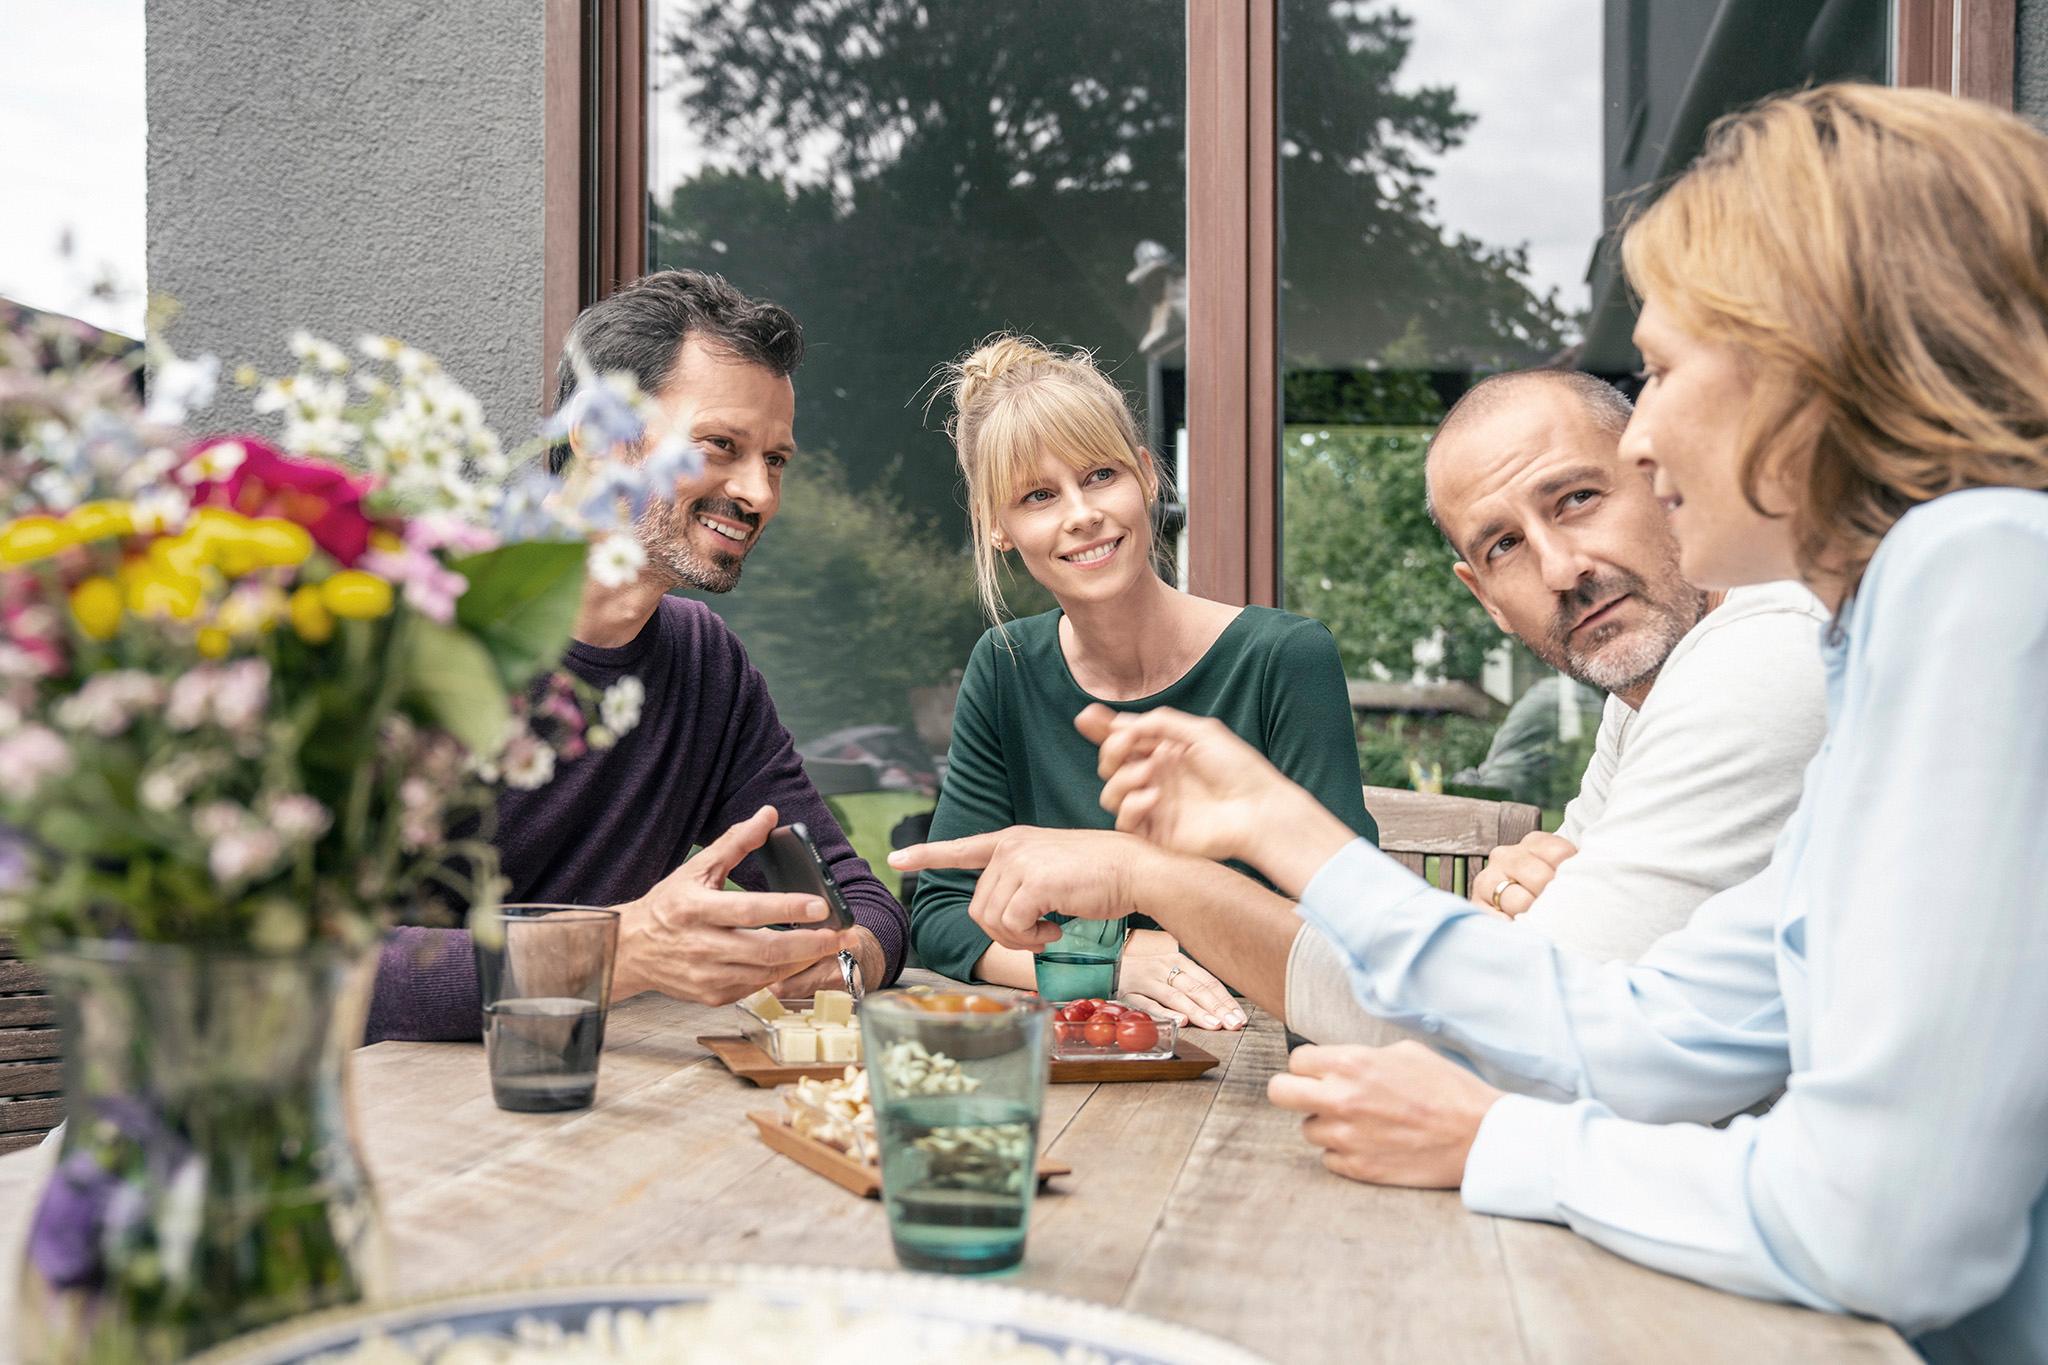 Essen mit Freunden im Garten - mit zolar in die Zukunft denken 